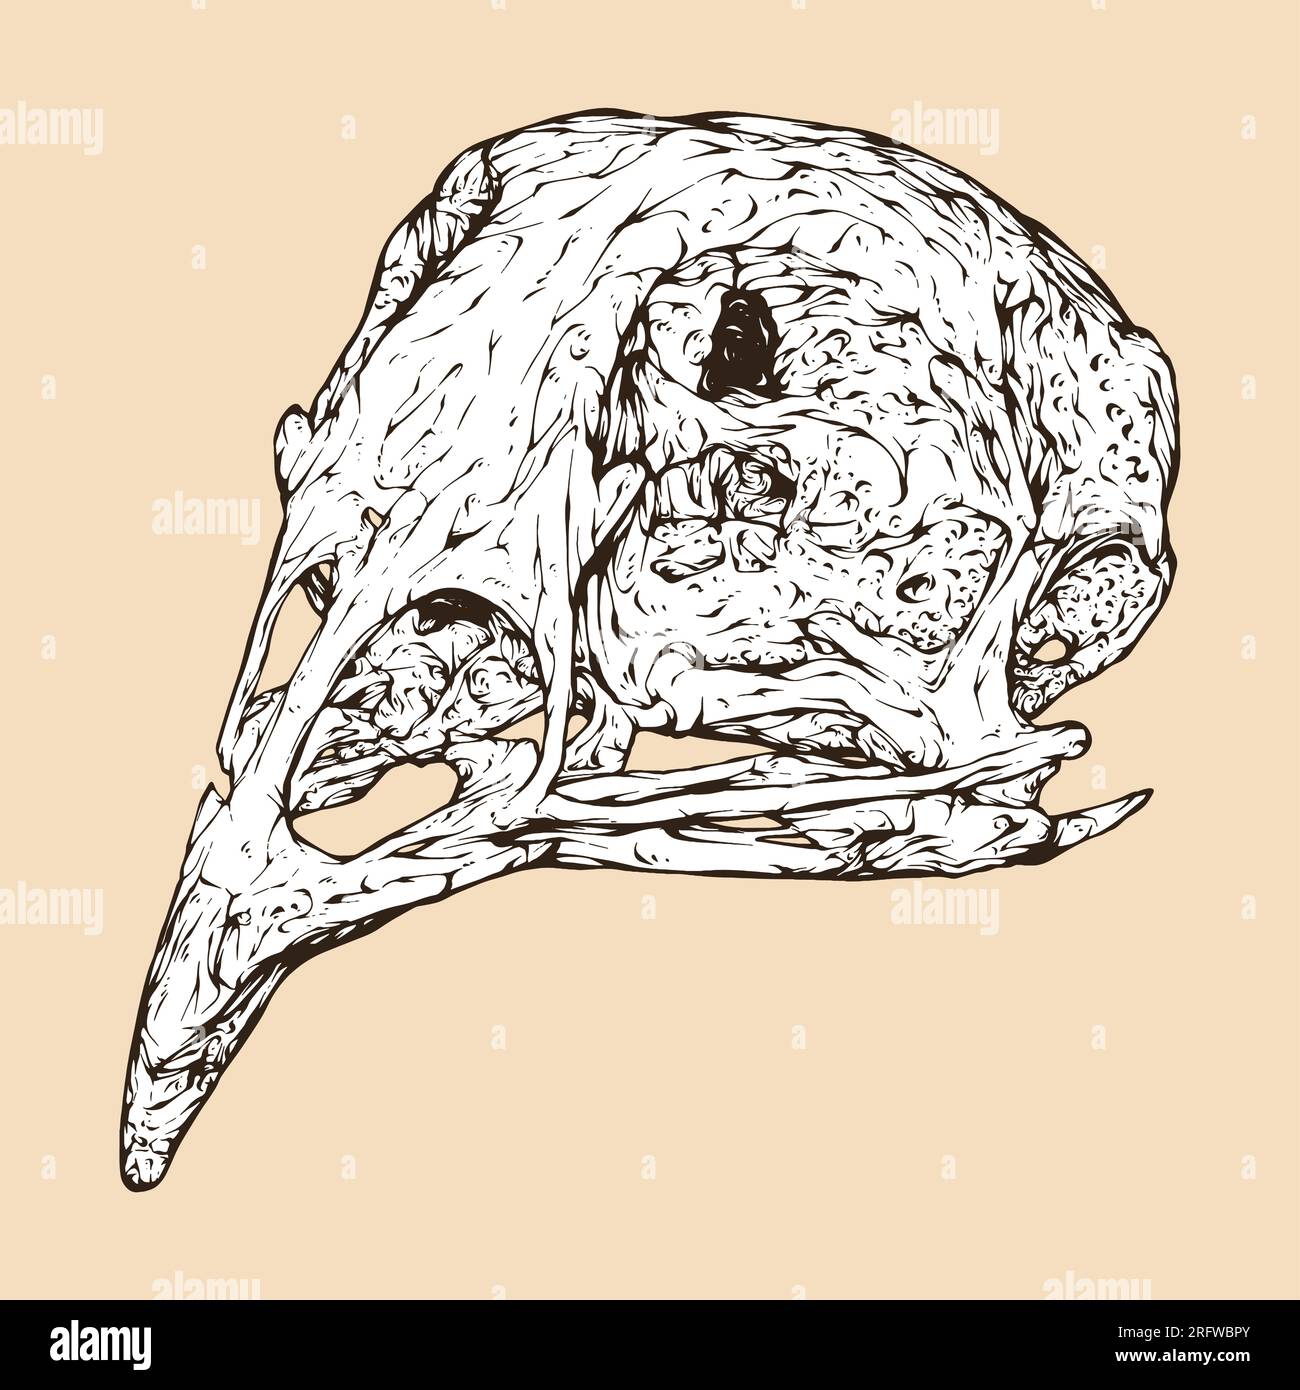 quail skull head vector illustration Stock Vector